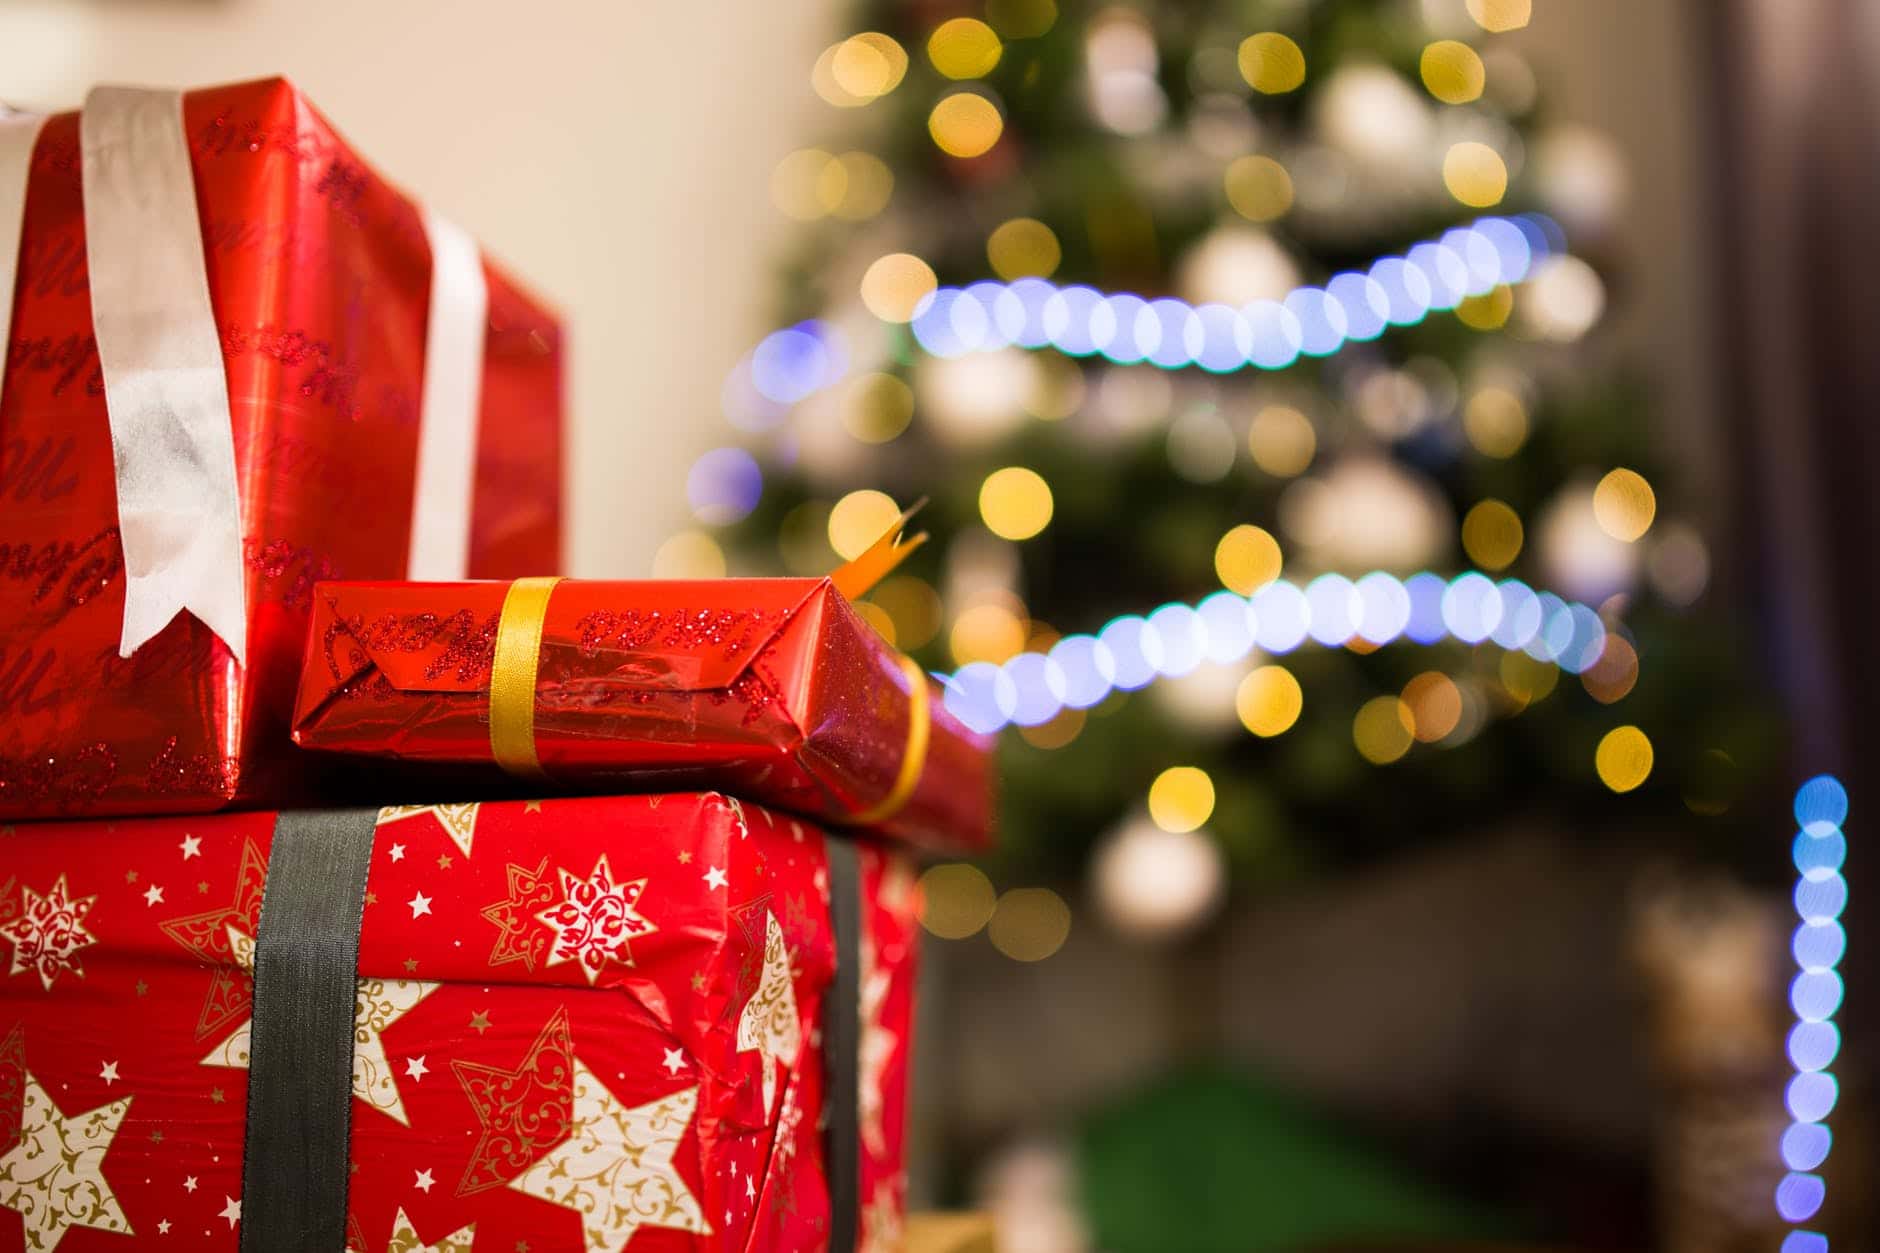 Un garçon de neuf ans appelle la police parce qu'il n'aime pas ses cadeaux de Noël